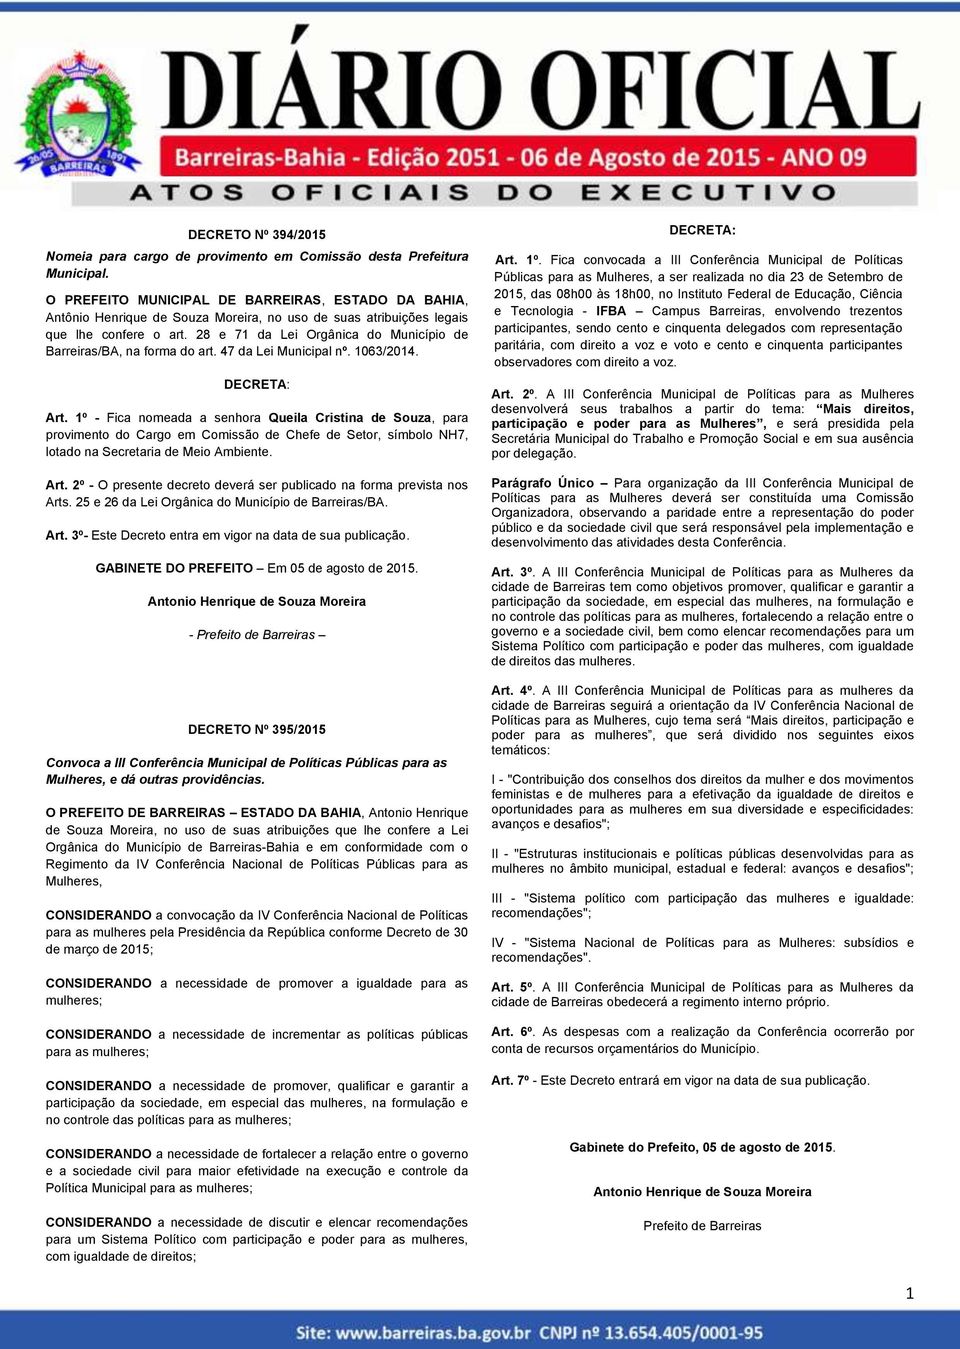 28 e 71 da Lei Orgânica do Município de Barreiras/BA, na forma do art. 47 da Lei Municipal nº. 1063/2014. DECRETA: Art.